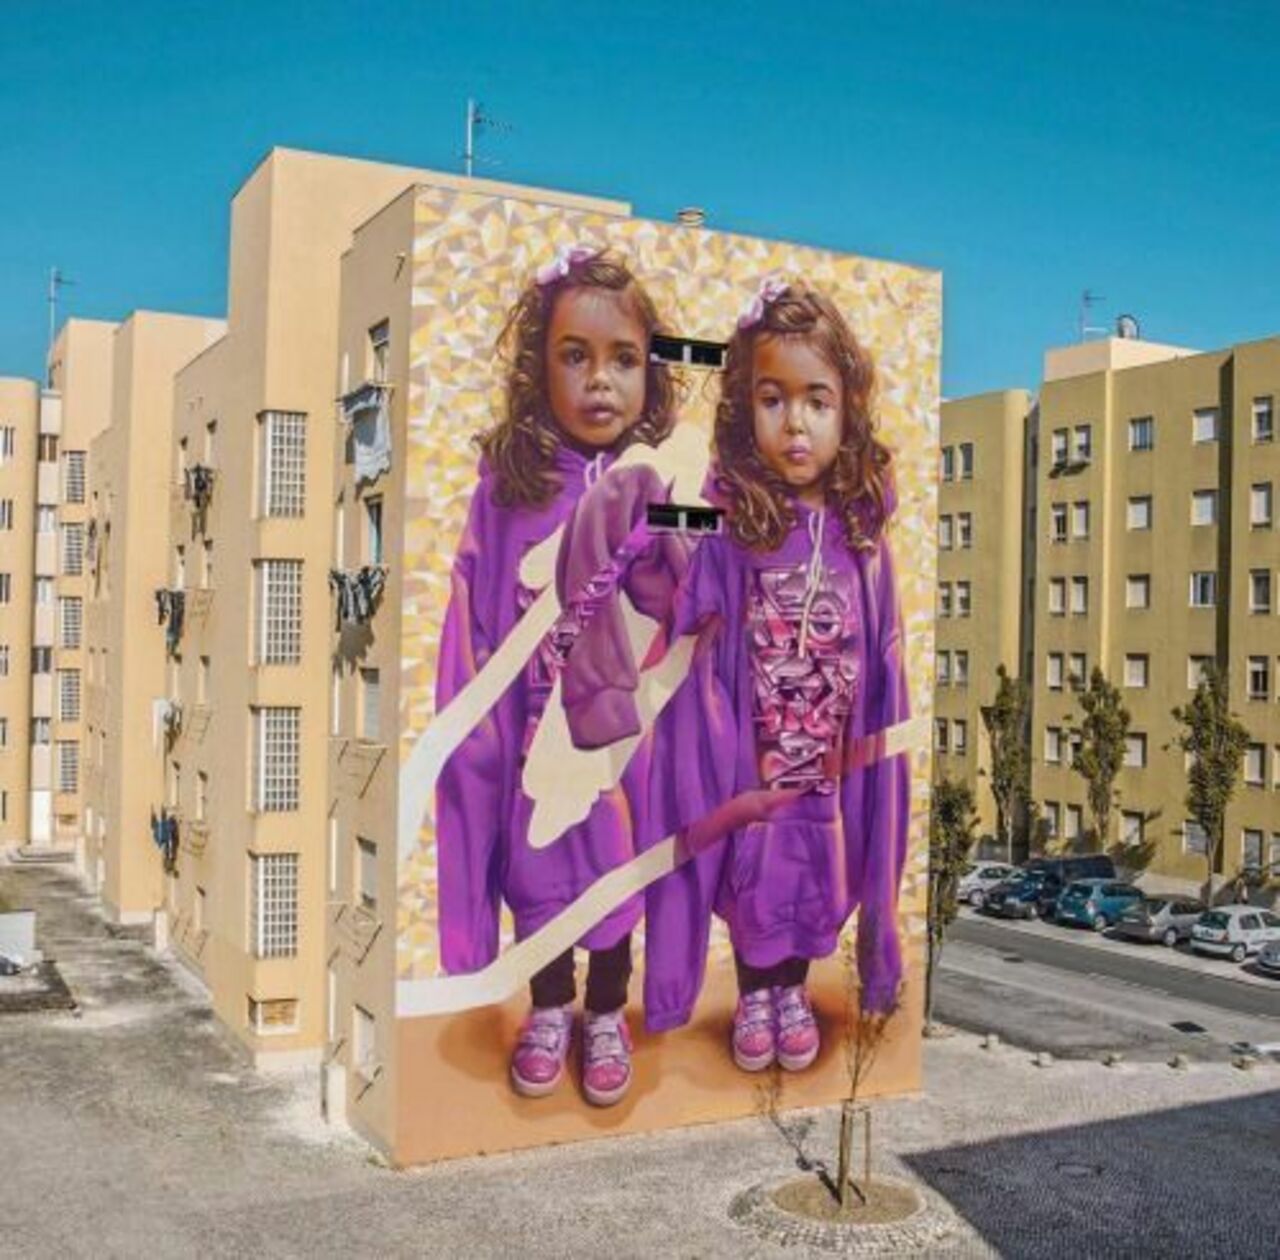 New work by TELMO MIEL and Pariz One for MURO festival in Lisbon. #mural #streetart #art #graffiti https://t.co/PpKYTv6tRv